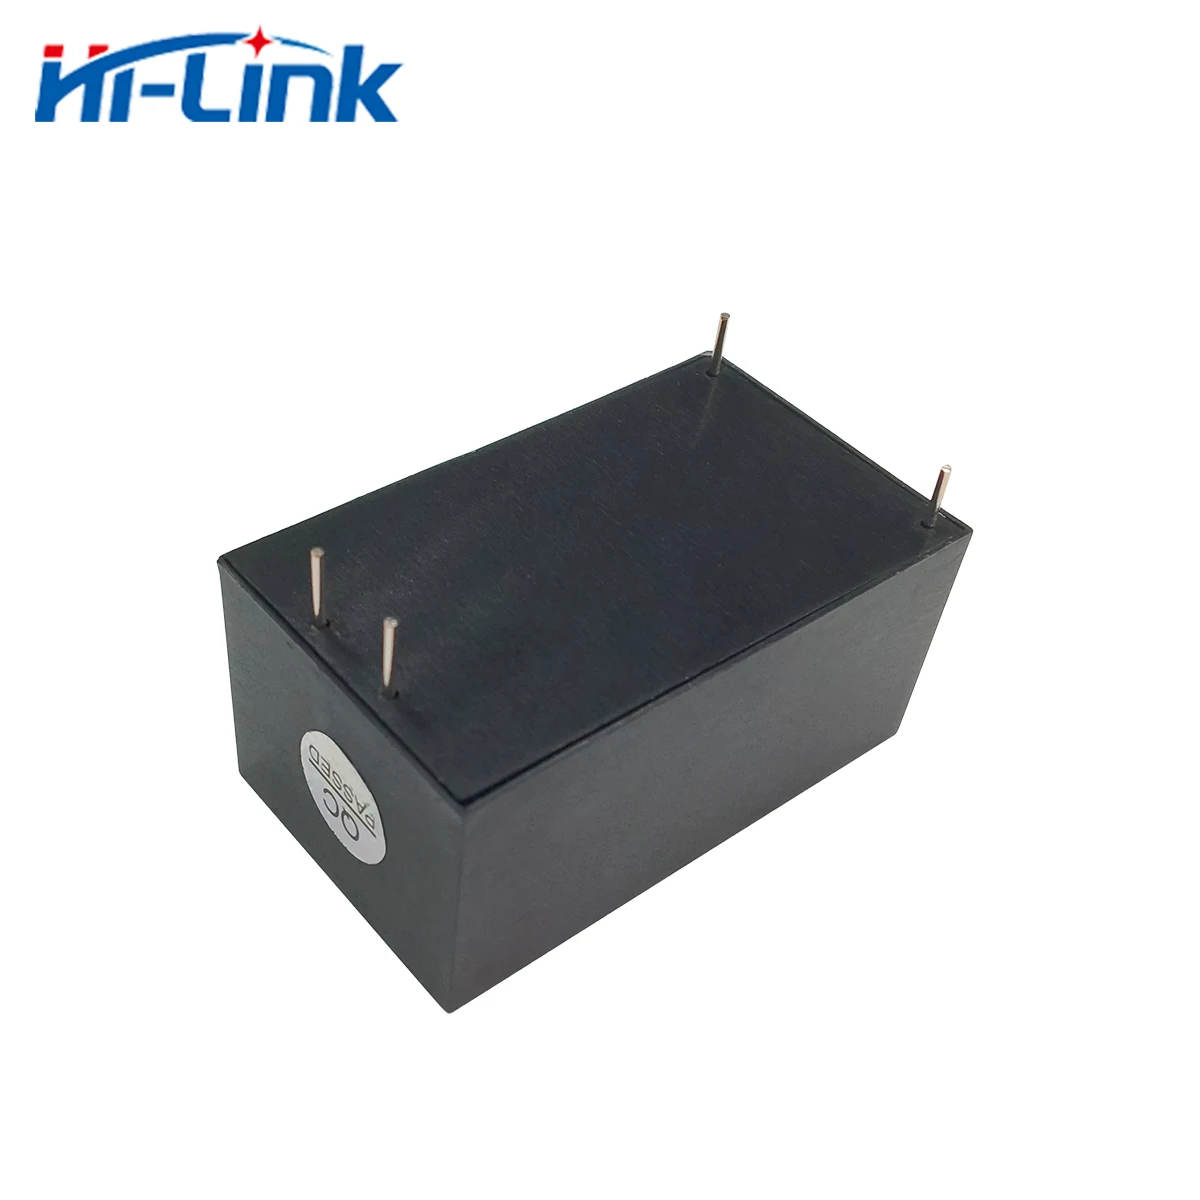 Envío gratis de Hi-Link 2pcs 220v 9V 10W AC DC aislado hogar inteligente compacto de conmutación de potencia mini supplymodule HLK-10M09 Imagen 4